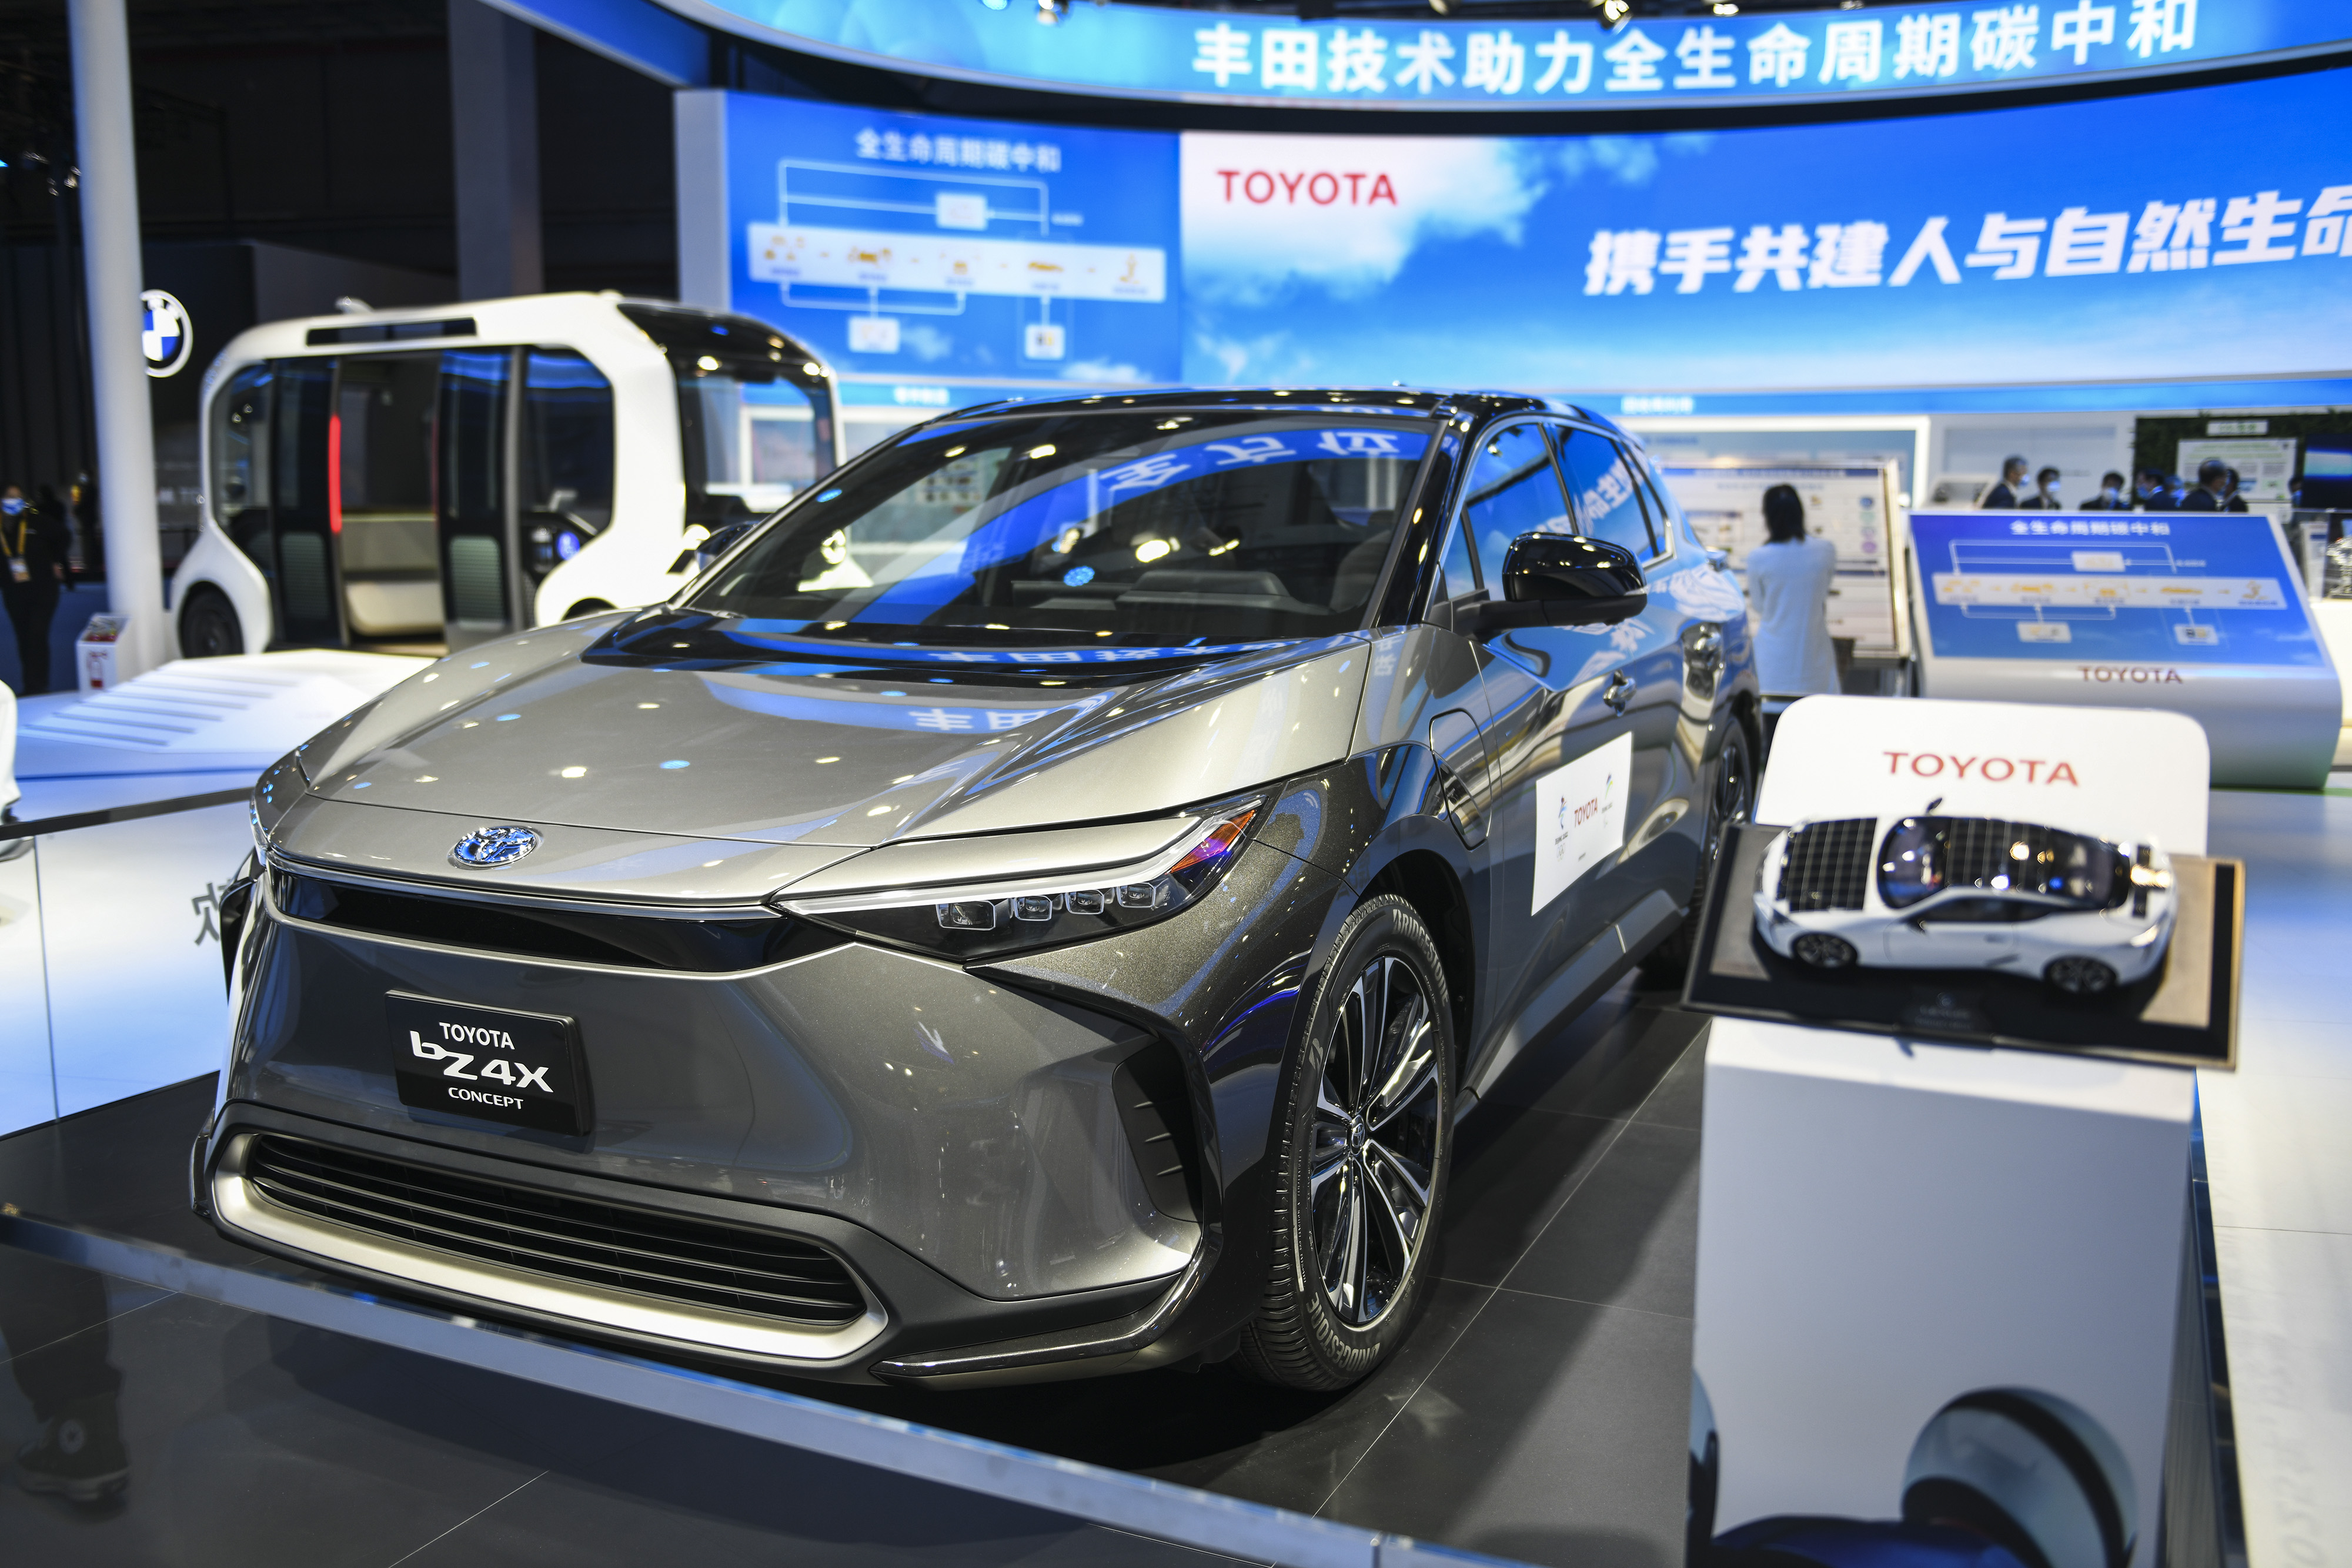 2021年11月5日在第四届进博会汽车展区拍摄的丰田新能源汽车.